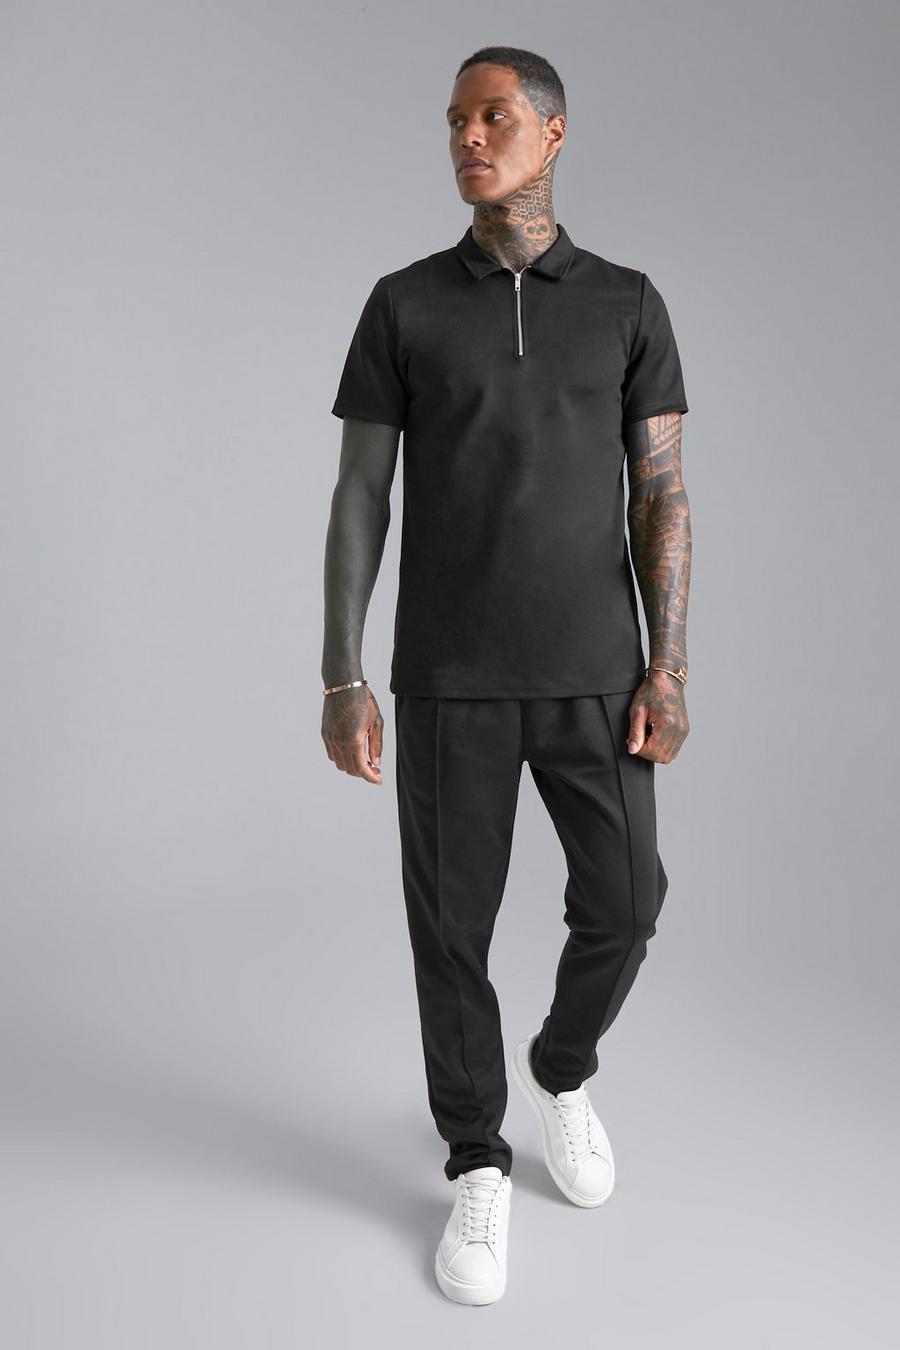 Muscle-Fit Poloshirt mit 1/4 Reißverschluss und Jogginghose, Black schwarz image number 1